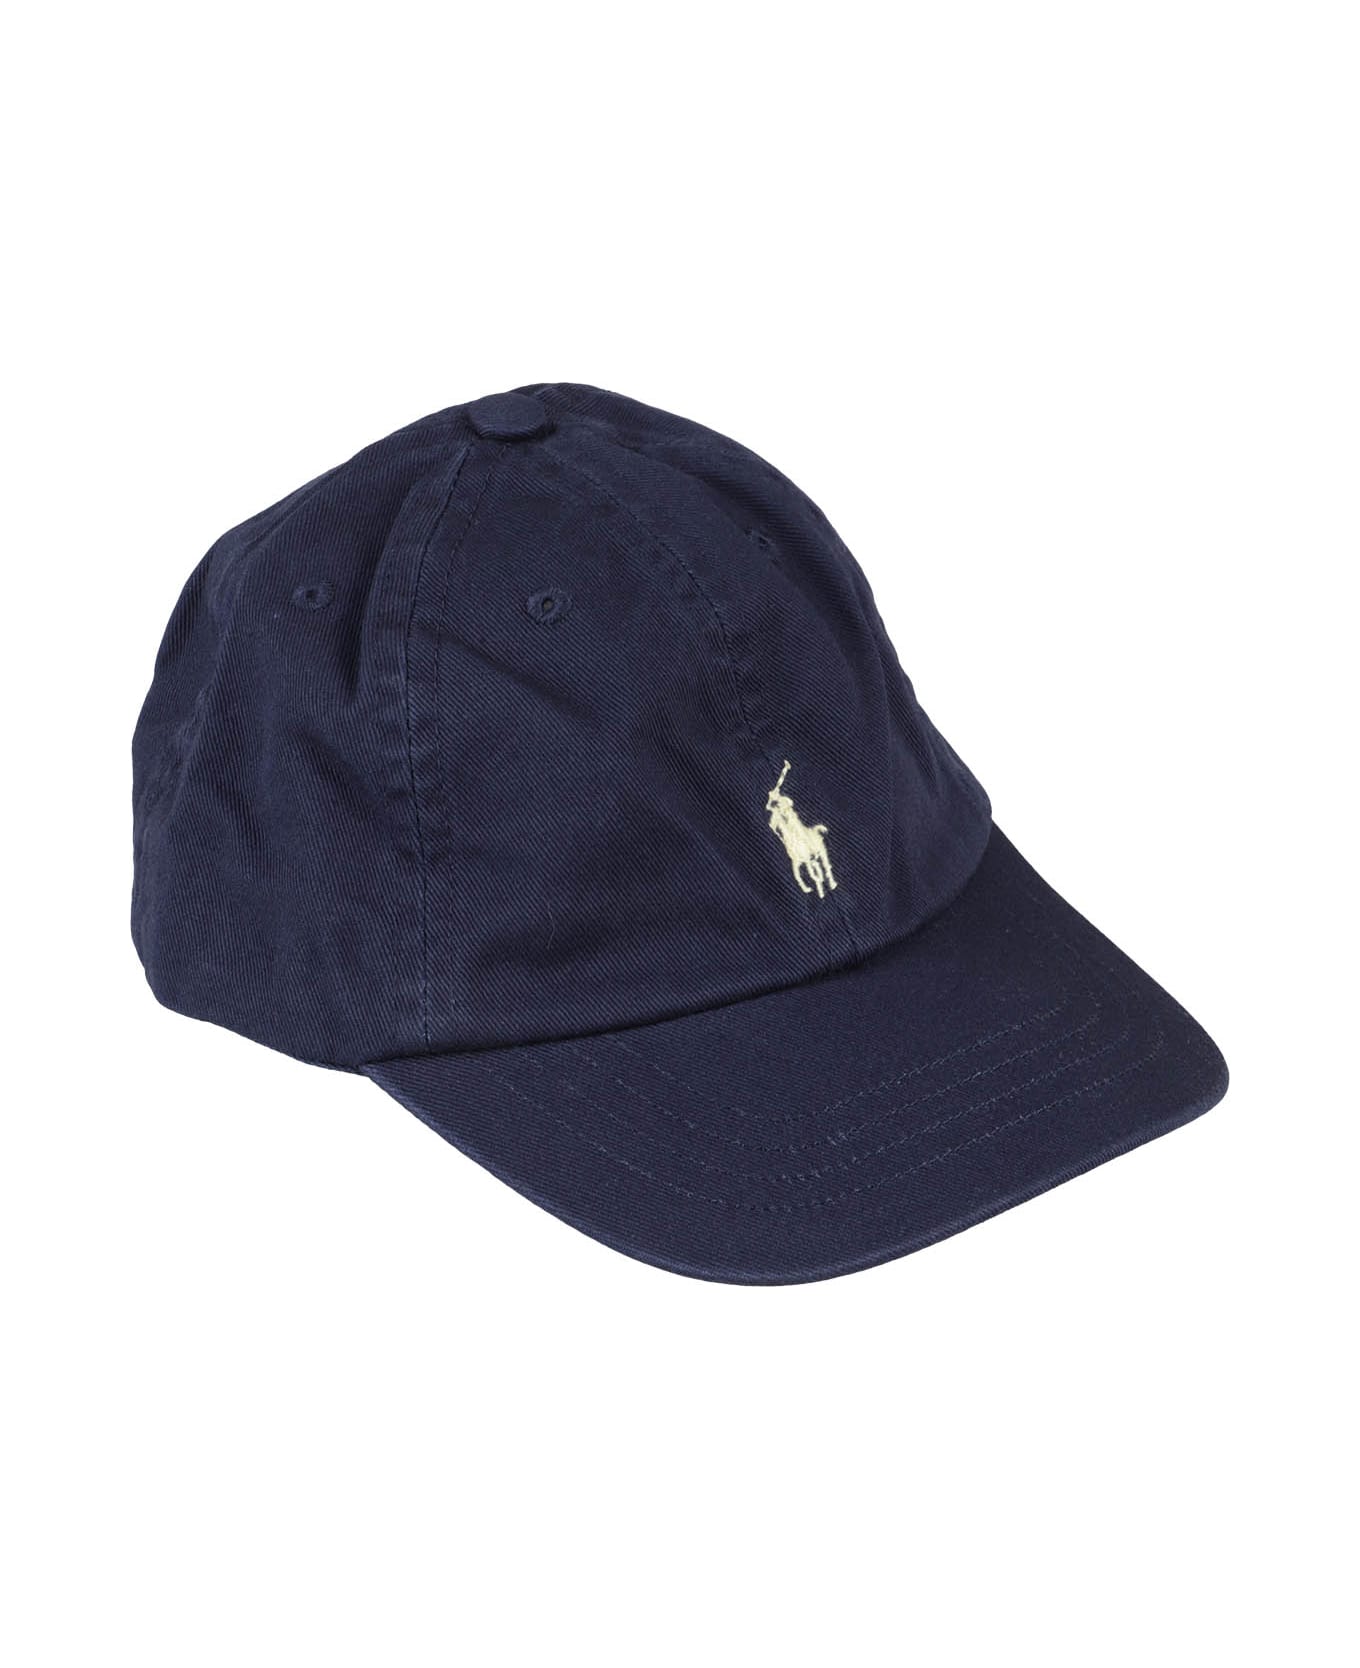 Polo Ralph Lauren Hat - Navy